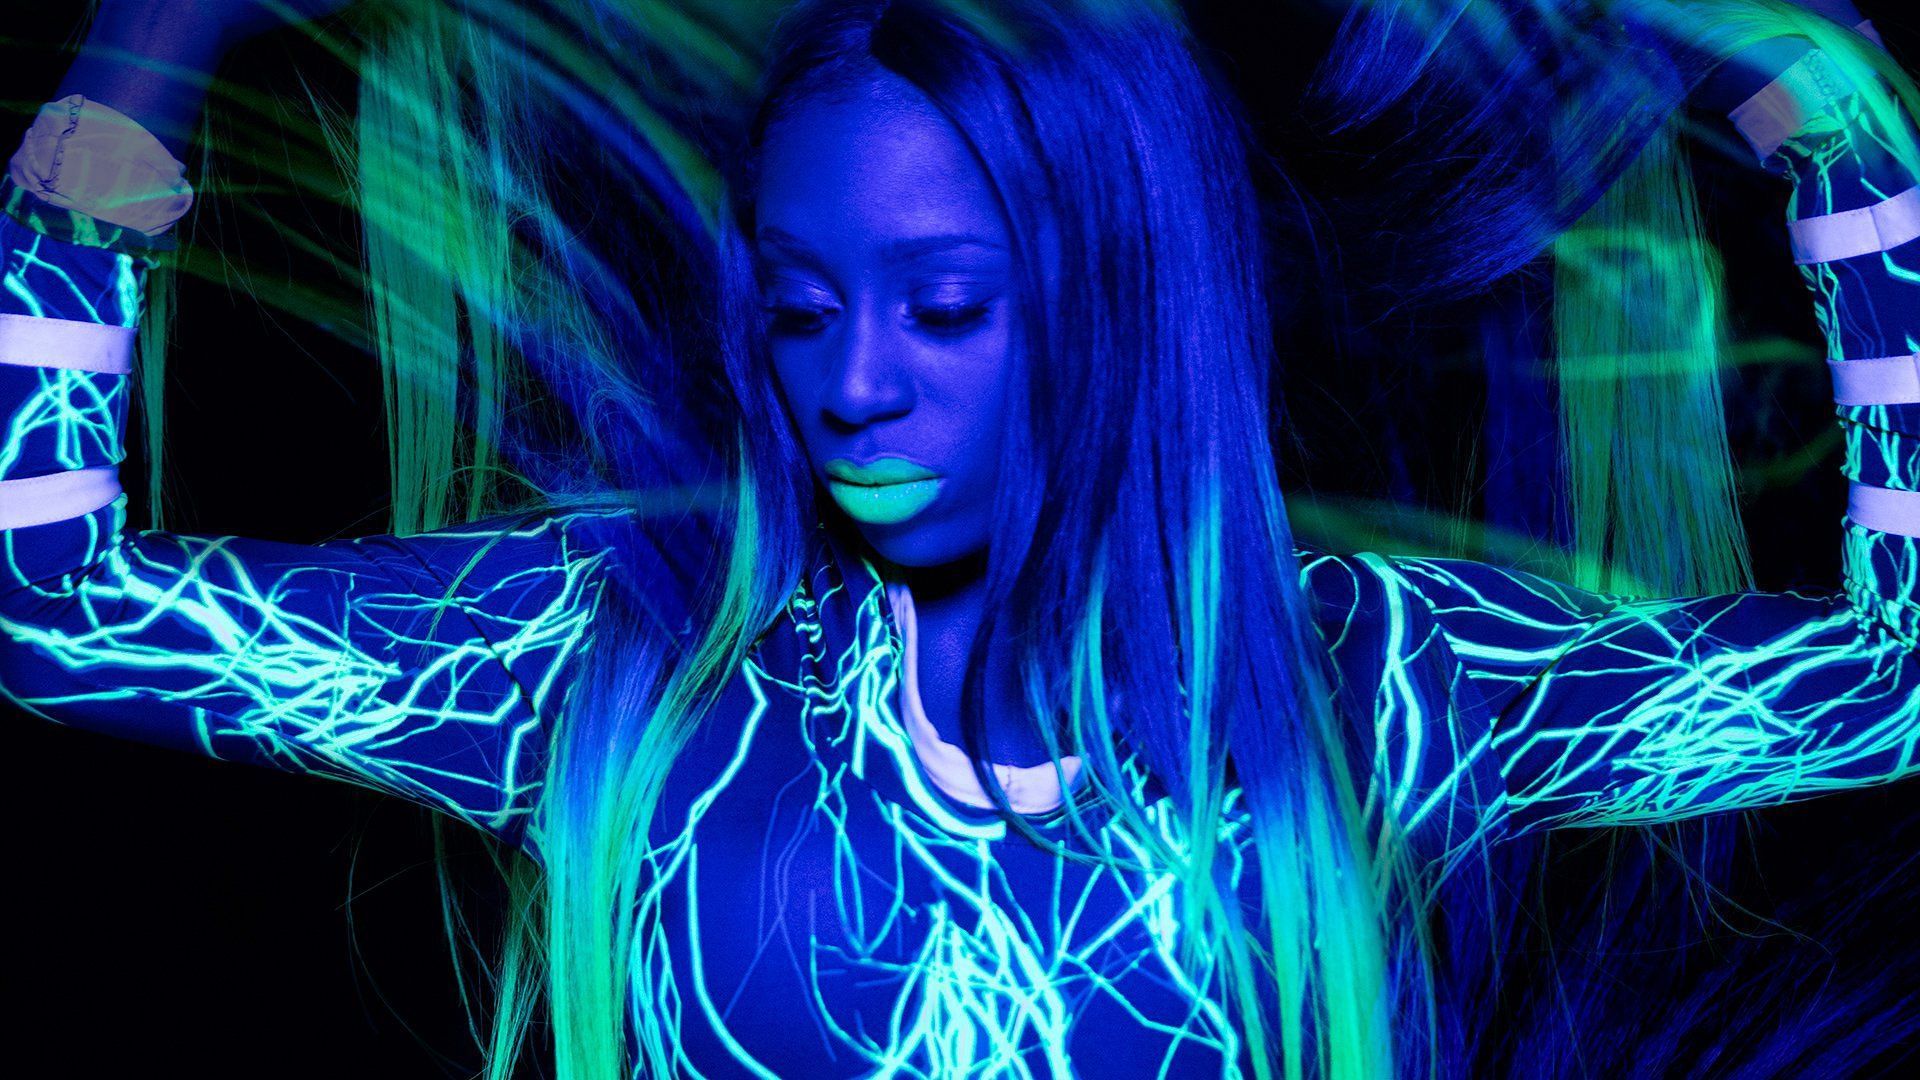 Naomi feeling the glow